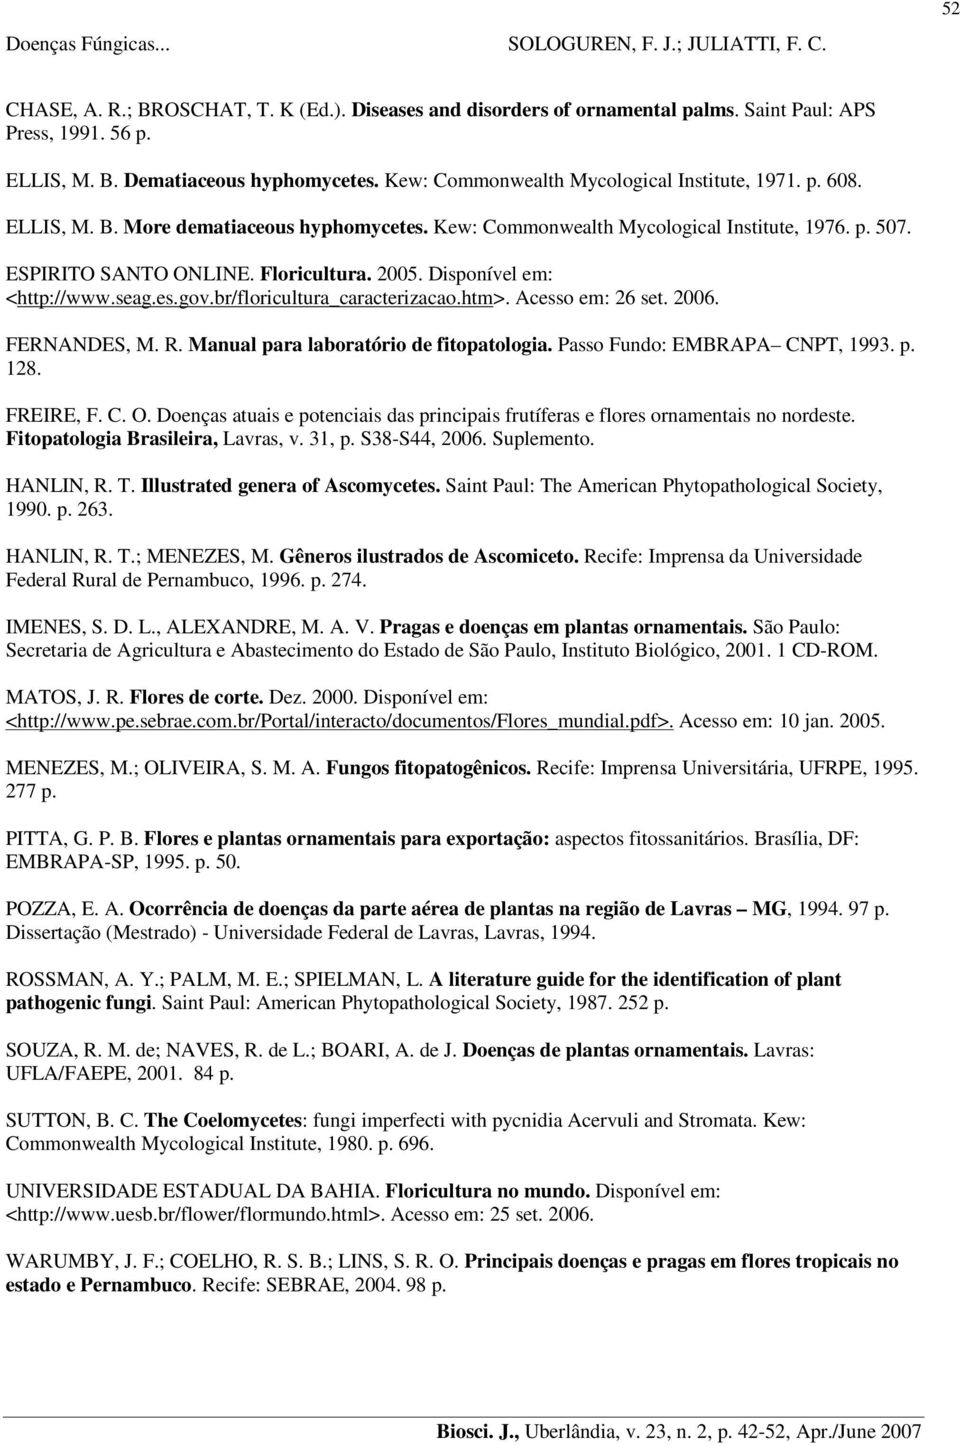 Disponível em: <http://www.seag.es.gov.br/floricultura_caracterizacao.htm>. Acesso em: 26 set. 2006. FERNANDES, M. R. Manual para laboratório de fitopatologia. Passo Fundo: EMBRAPA CNPT, 1993. p. 128.